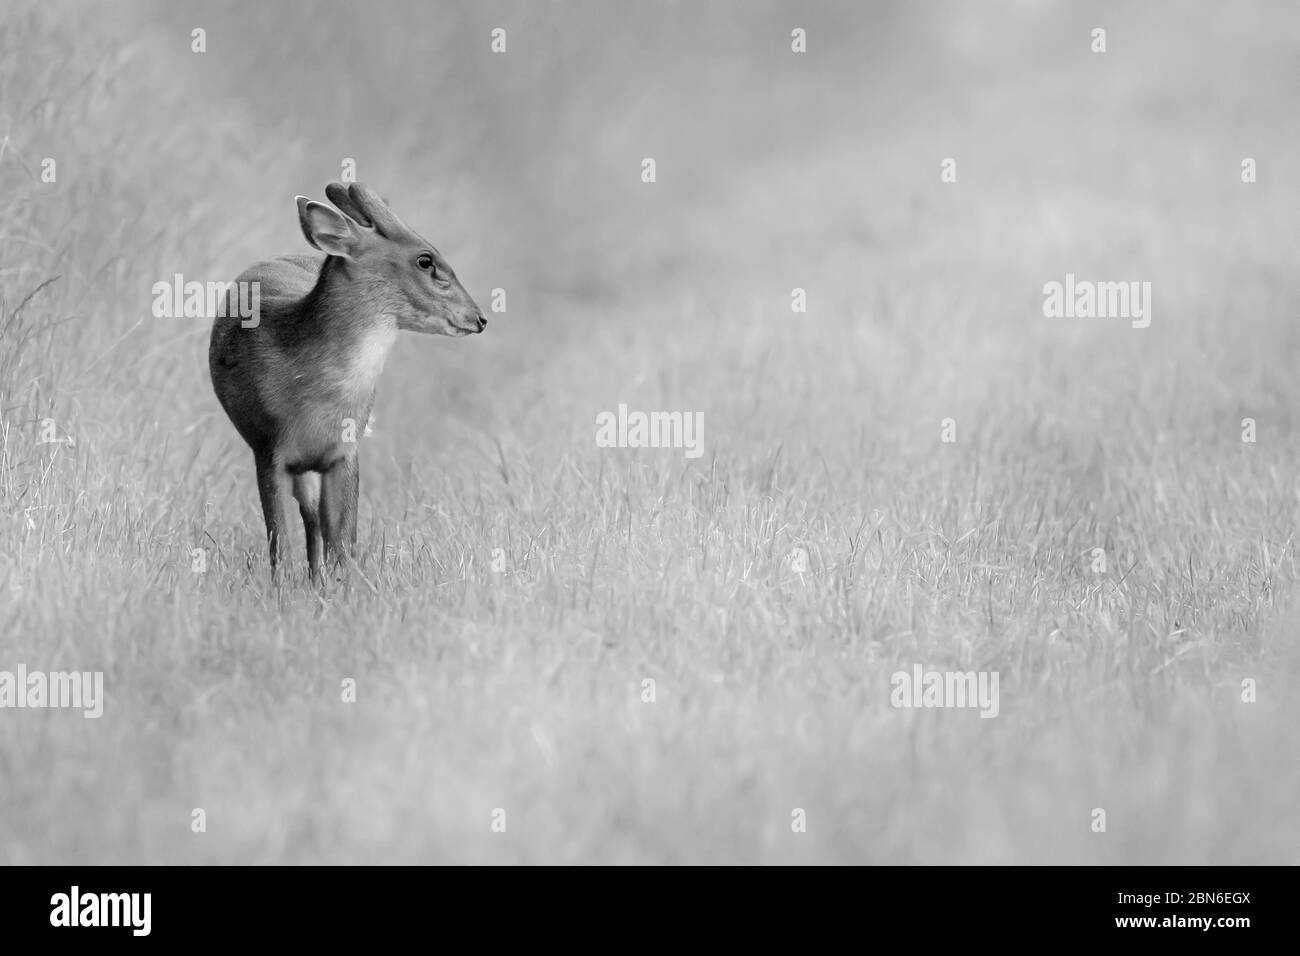 Jeune cerf muntjac sauvage seul dans un paysage rural naturel. Portrait d'un animal noir et blanc en gros plan dans un champ d'herbe. Également connu sous le nom de cerf de barque Banque D'Images